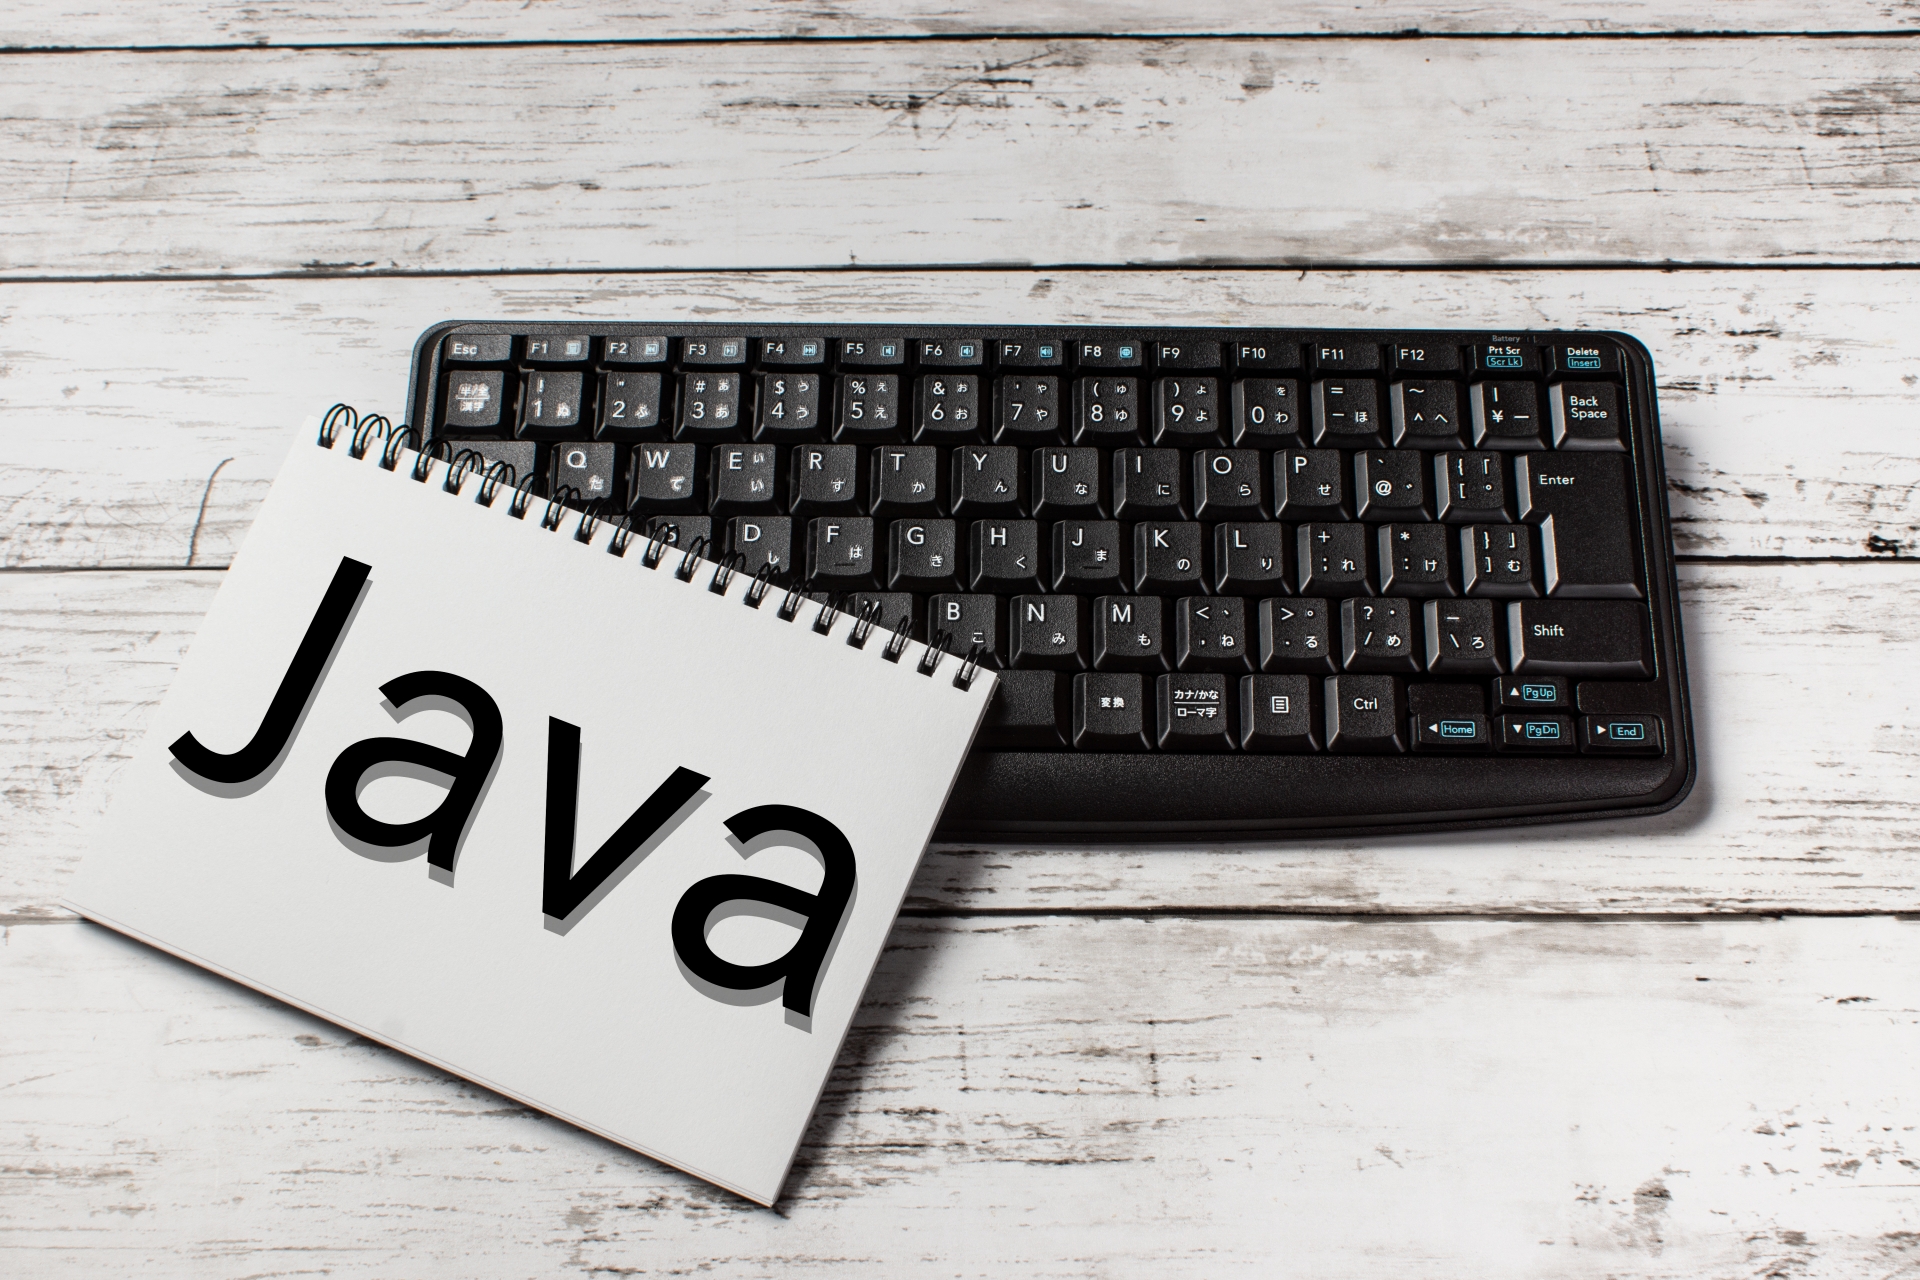 Javaに特化しているITスクールで受講したい！と思っていませんか？ウズウズカレッジ Javaコースなら、名前の通りプログラミング言語のJavaに特化しているスクールであること以外にも、サブスクでの利用なので、おすすめですよ。